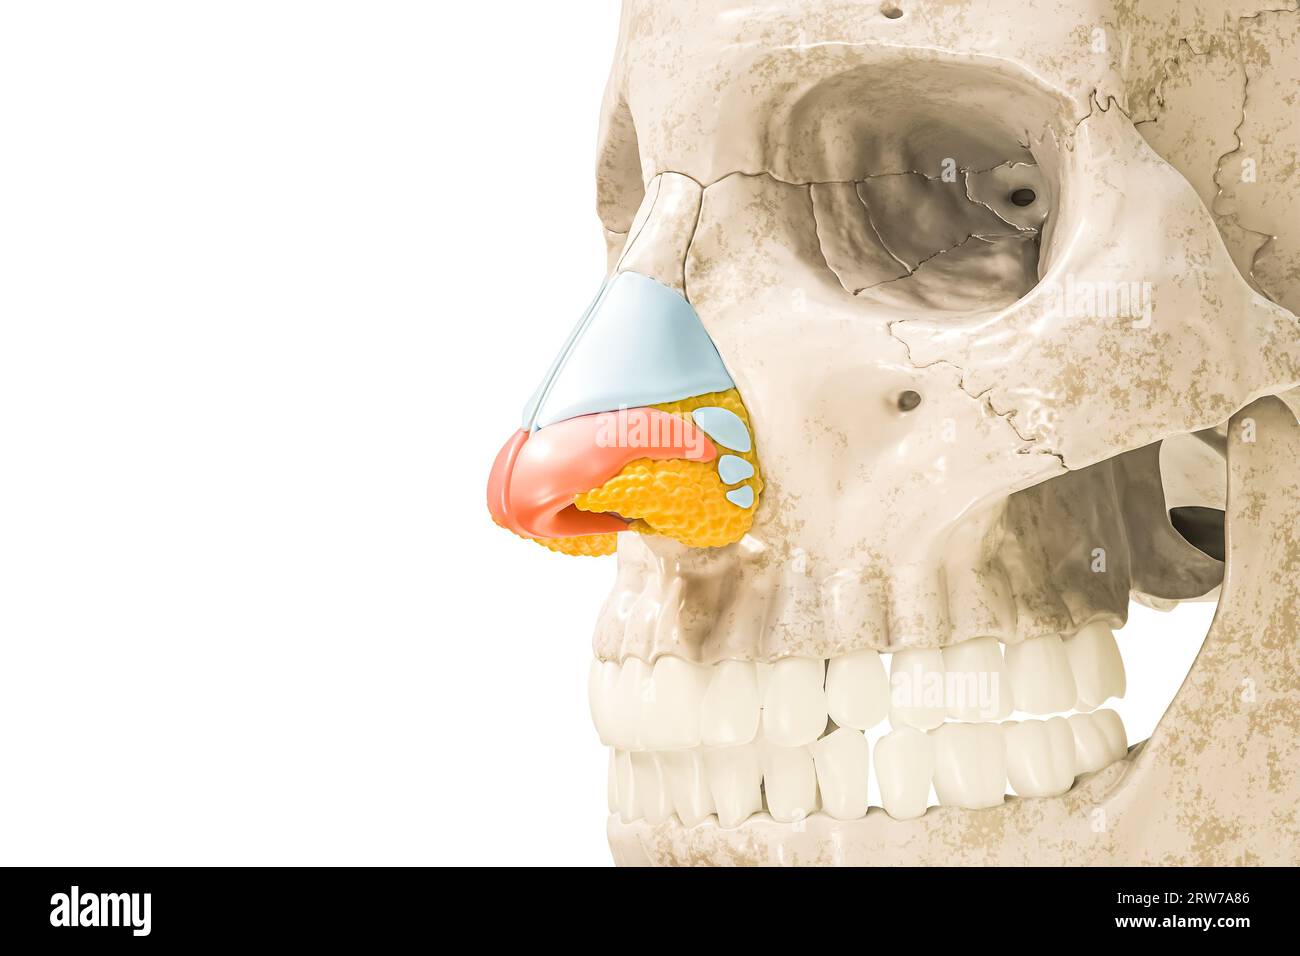 Cartilagine nasale ALAR in rosso illustrazione di rendering 3D isolata su bianco con spazio di copia. Scheletro umano e anatomia del naso, diagramma medico concep Foto Stock